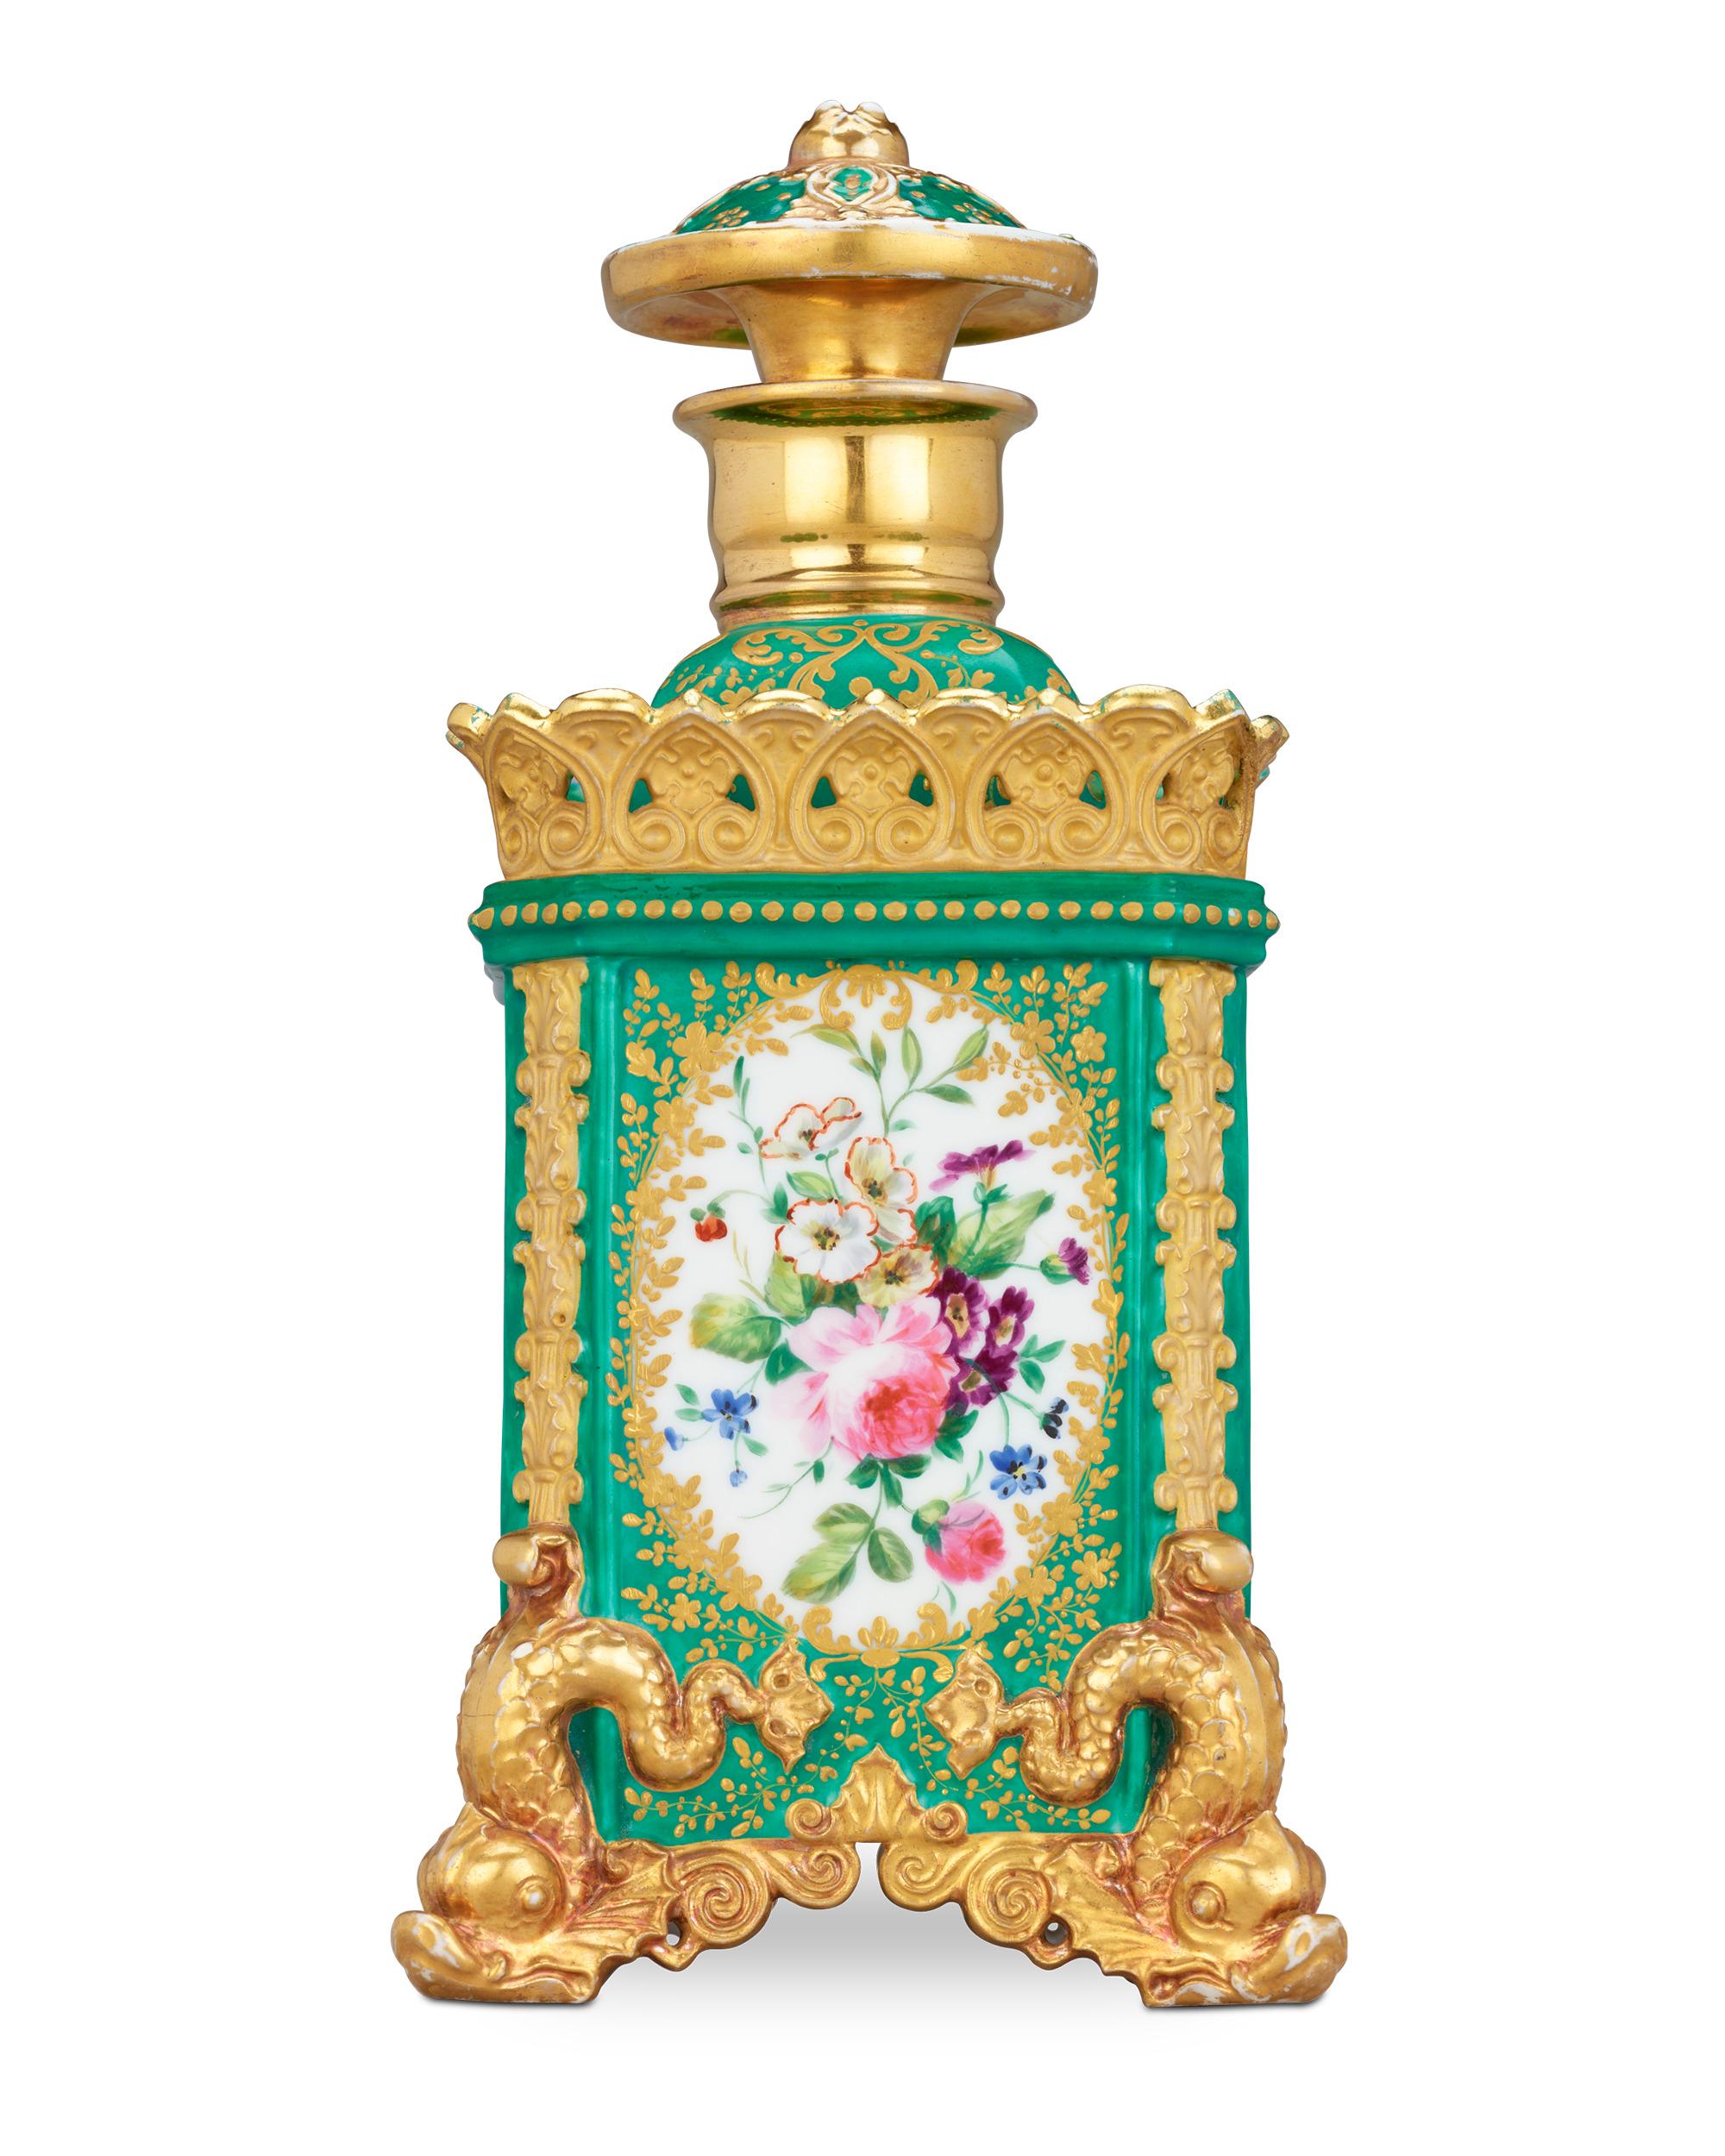 Ein üppiges Blumenmotiv und reiche Farben kennzeichnen diesen seltenen Parfümflakon von Jacob Petit, einem berühmten Keramiker und einem der bedeutendsten Hersteller von Rokoko-Ziergegenständen im 19. Seine einzigartige quadratische Form ist mit